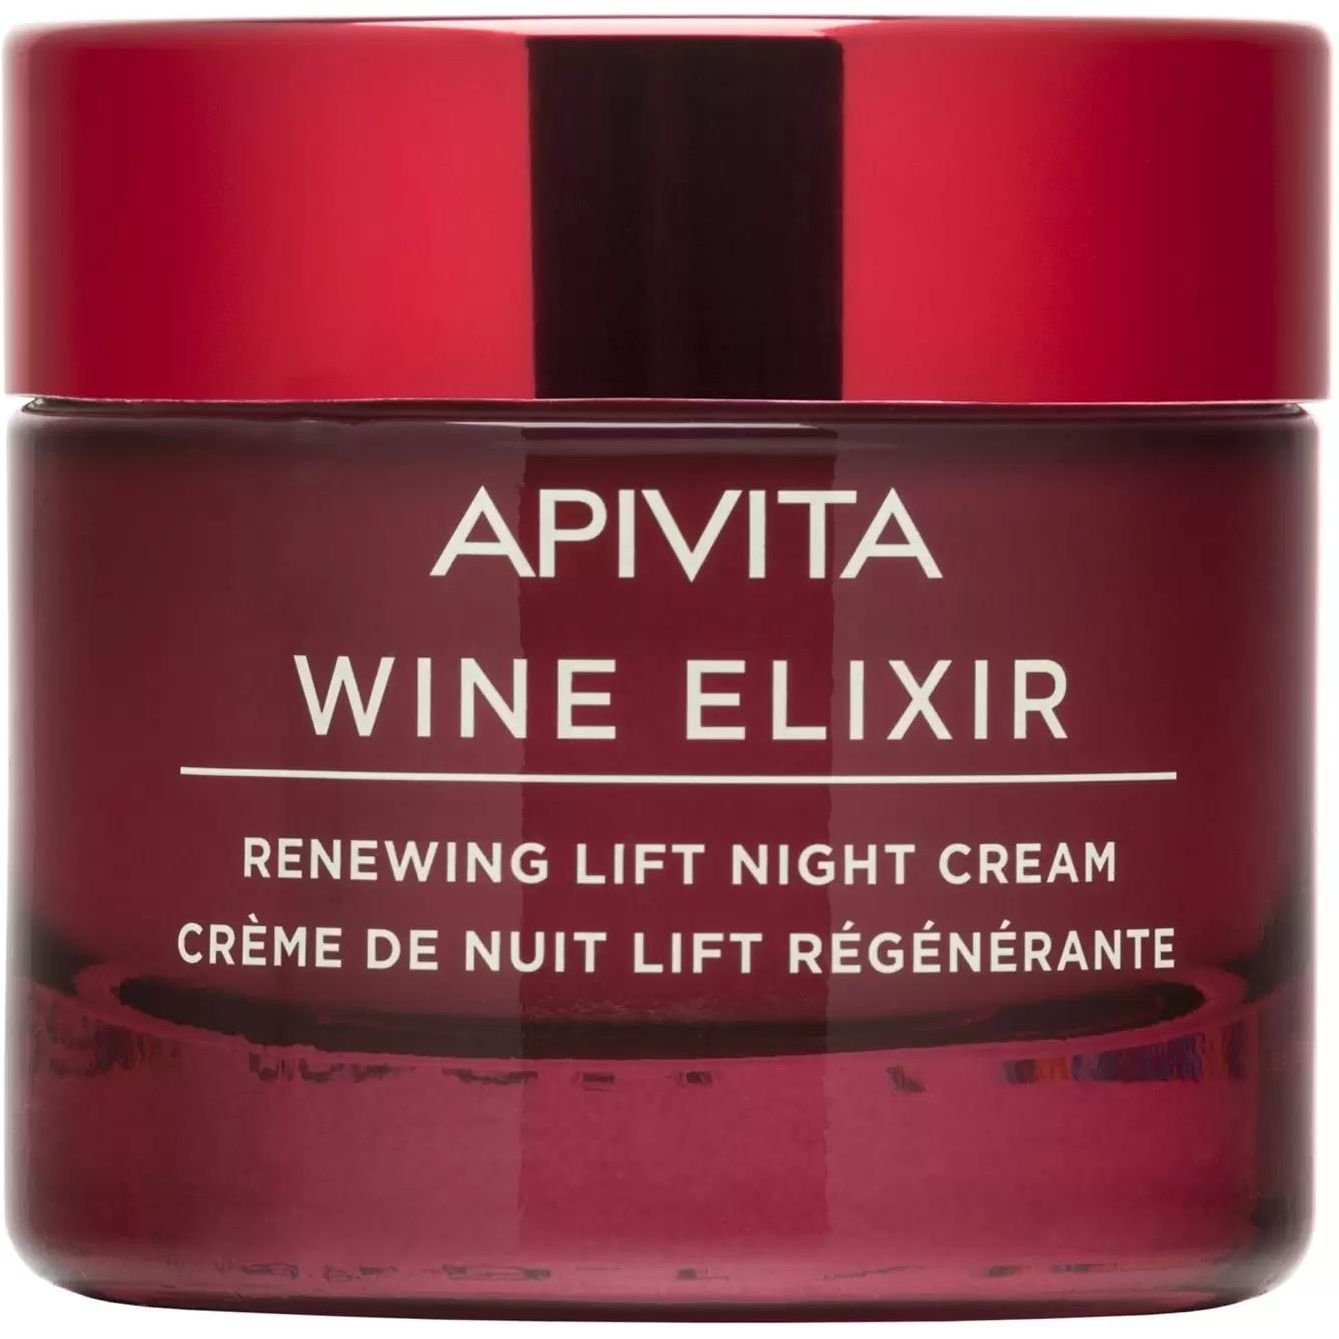 Нічний крем-ліфтинг для відновлення шкіри Apivita Wine Elixir, 50 мл - фото 1